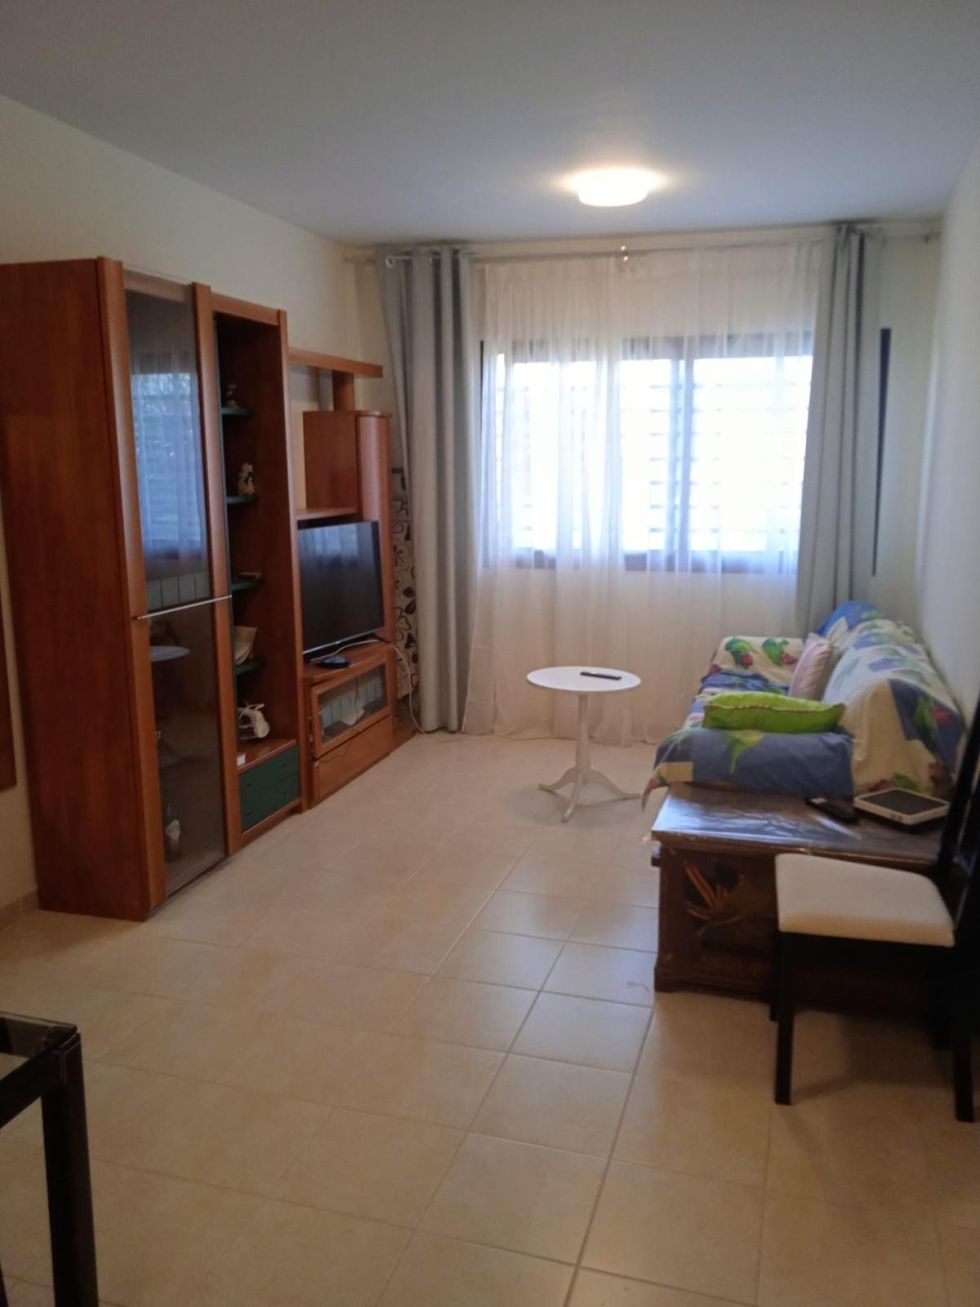 Apartment for sale in  Tijoco Bajo, Spain - 053791